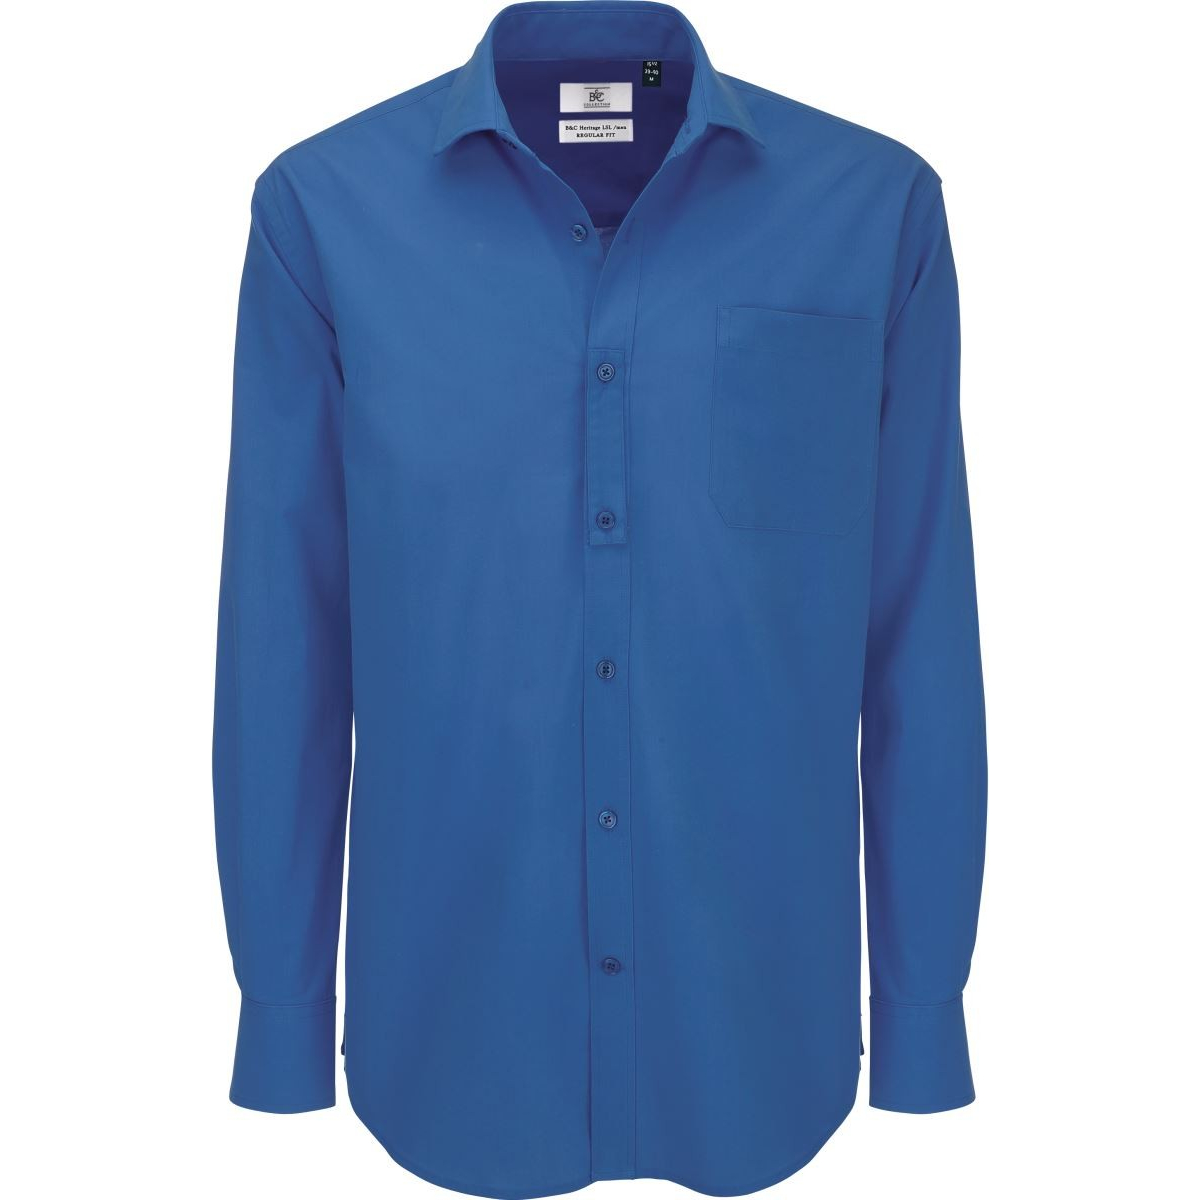 Pánská popelínová košile B&C Heritage s dlouhým rukávem - modrá, L